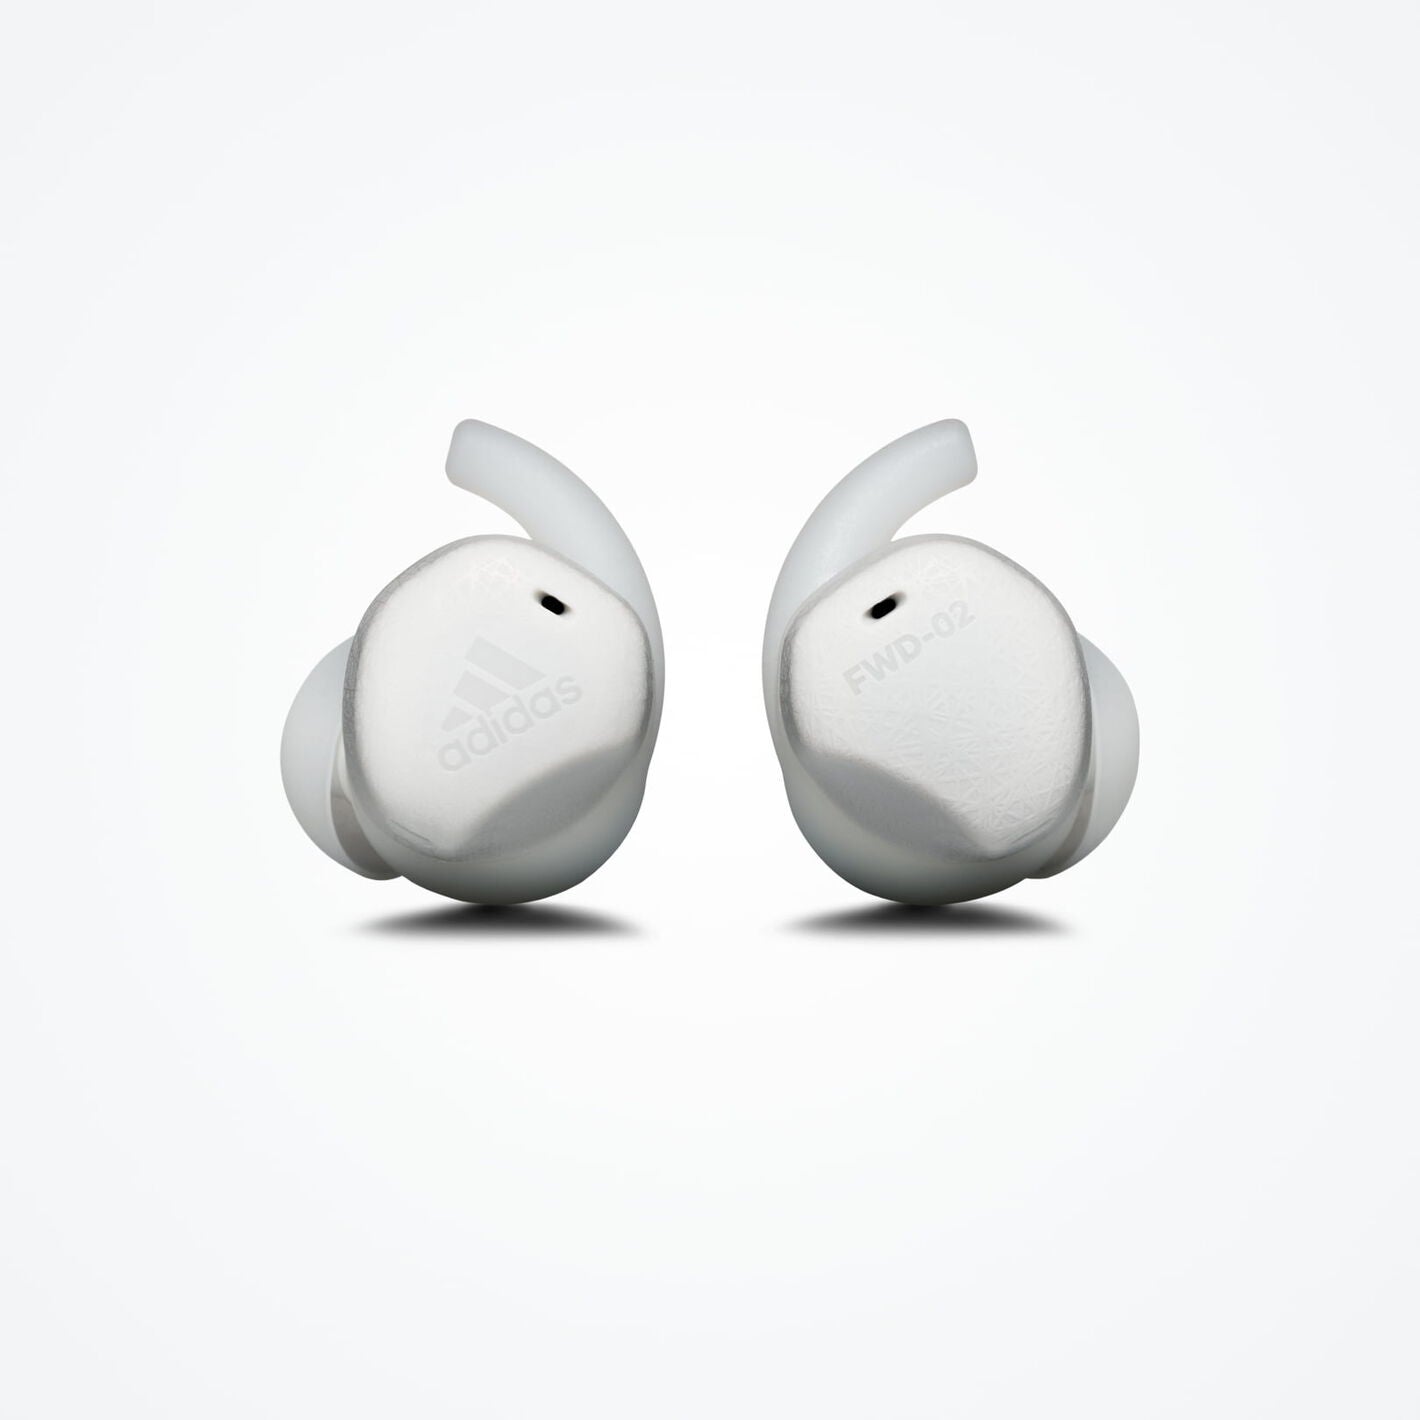 ADIDAS Headphones FWD-02 True Wireless In-Ear Sports Earbuds - Run - Light Grey